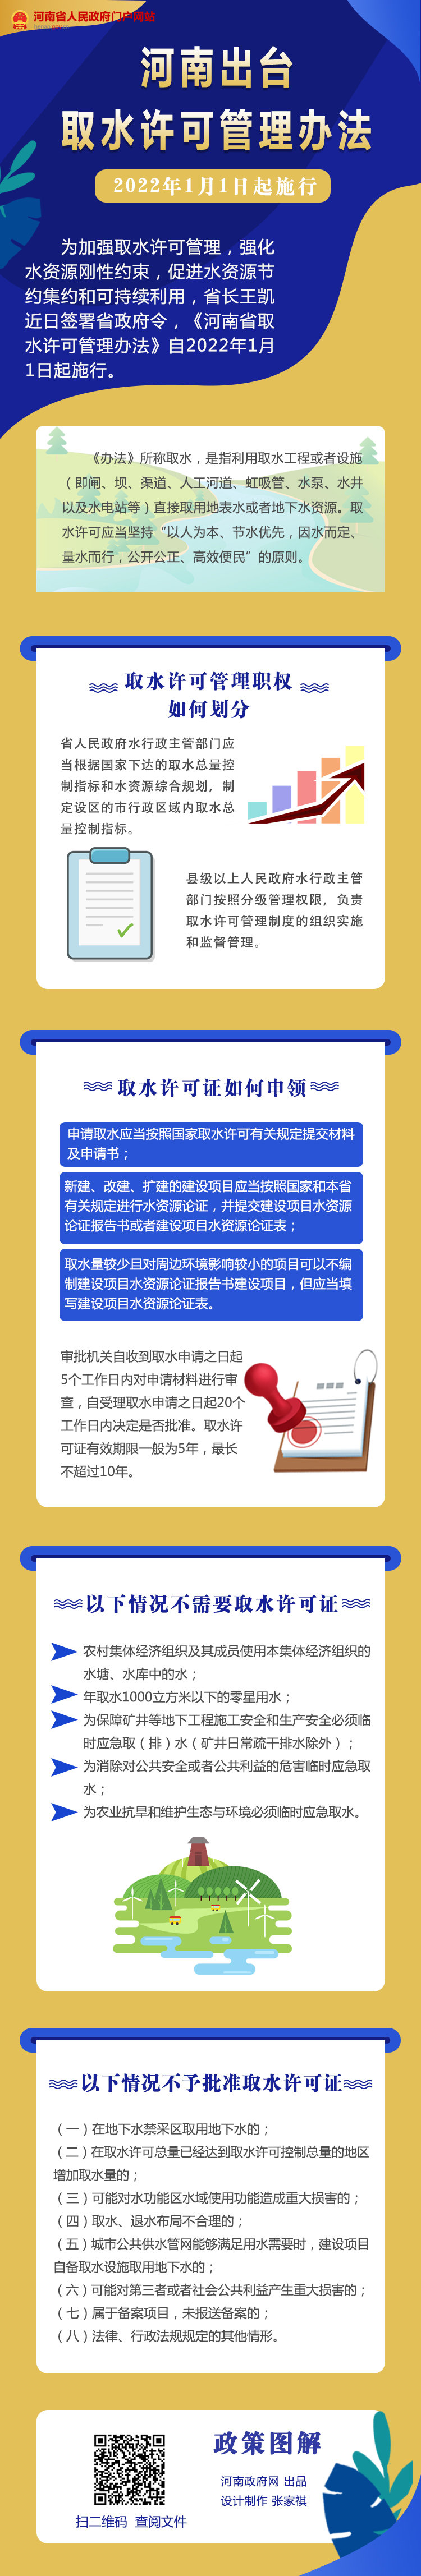 圖解丨河南發布河南省取水許可管理辦法 2022年1月1日起施行